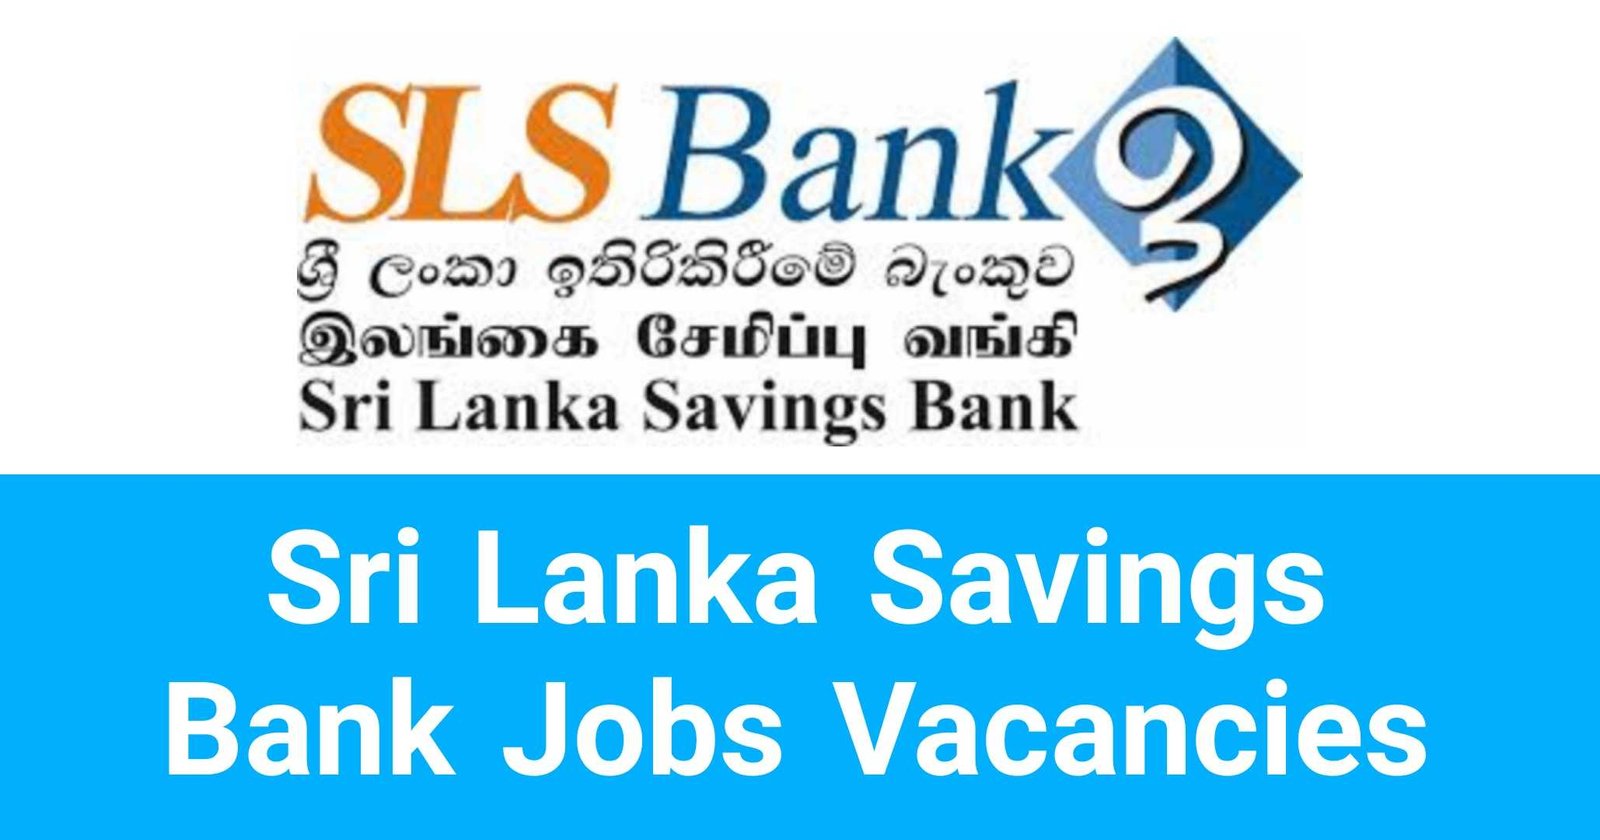 Sri Lanka Savings Bank Jobs Vacancies Careers